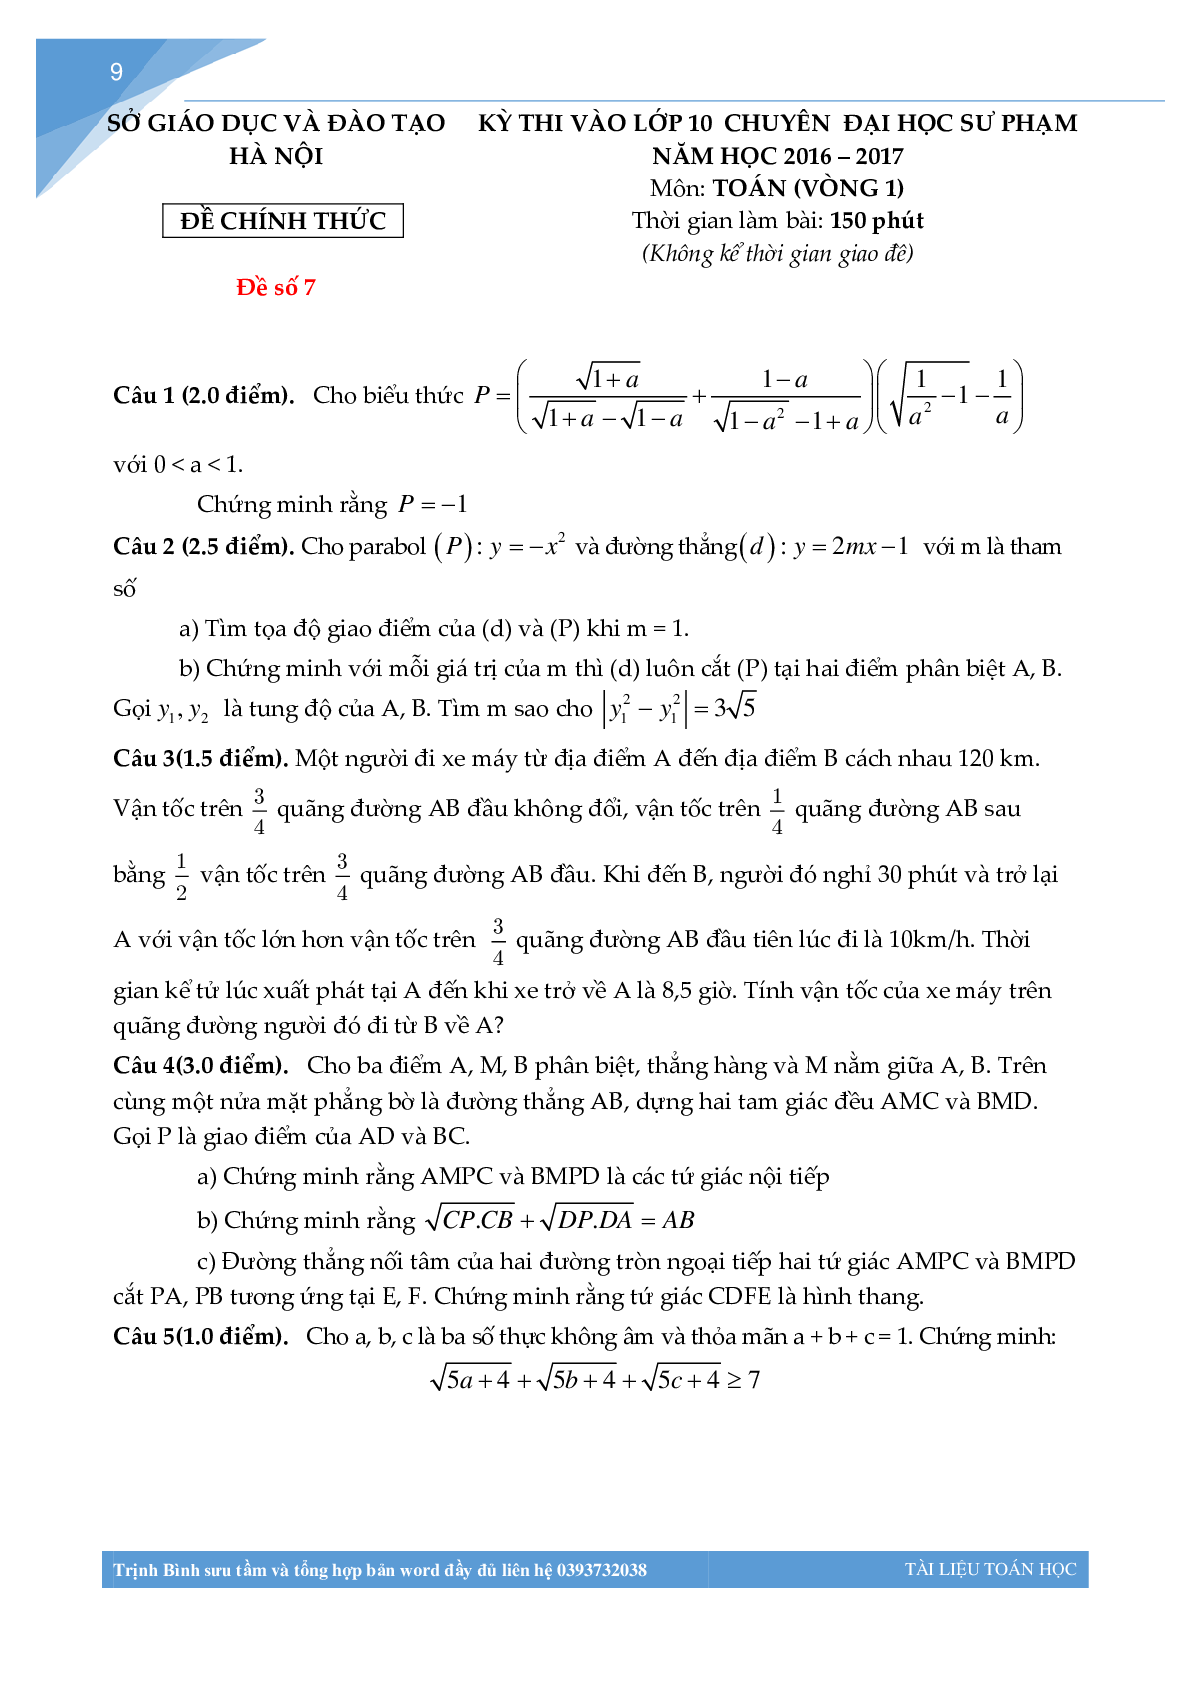 Bộ đề thi toán vào lớp 10 chuyên đại học sư phạm Hà Nội (trang 8)